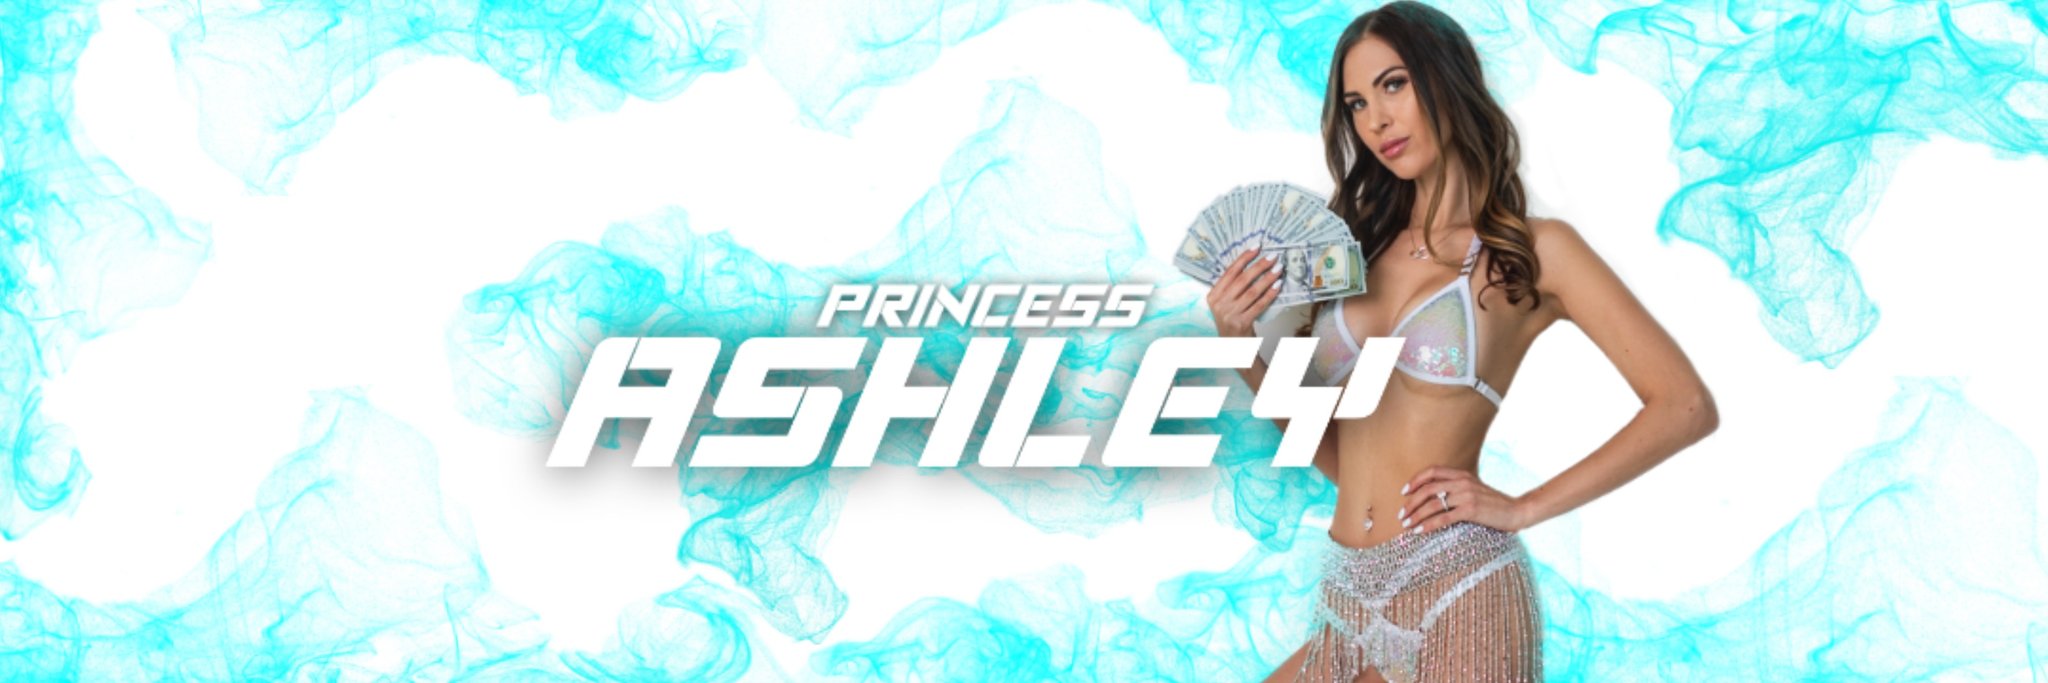 Ashley clips princess design.postergully.com :